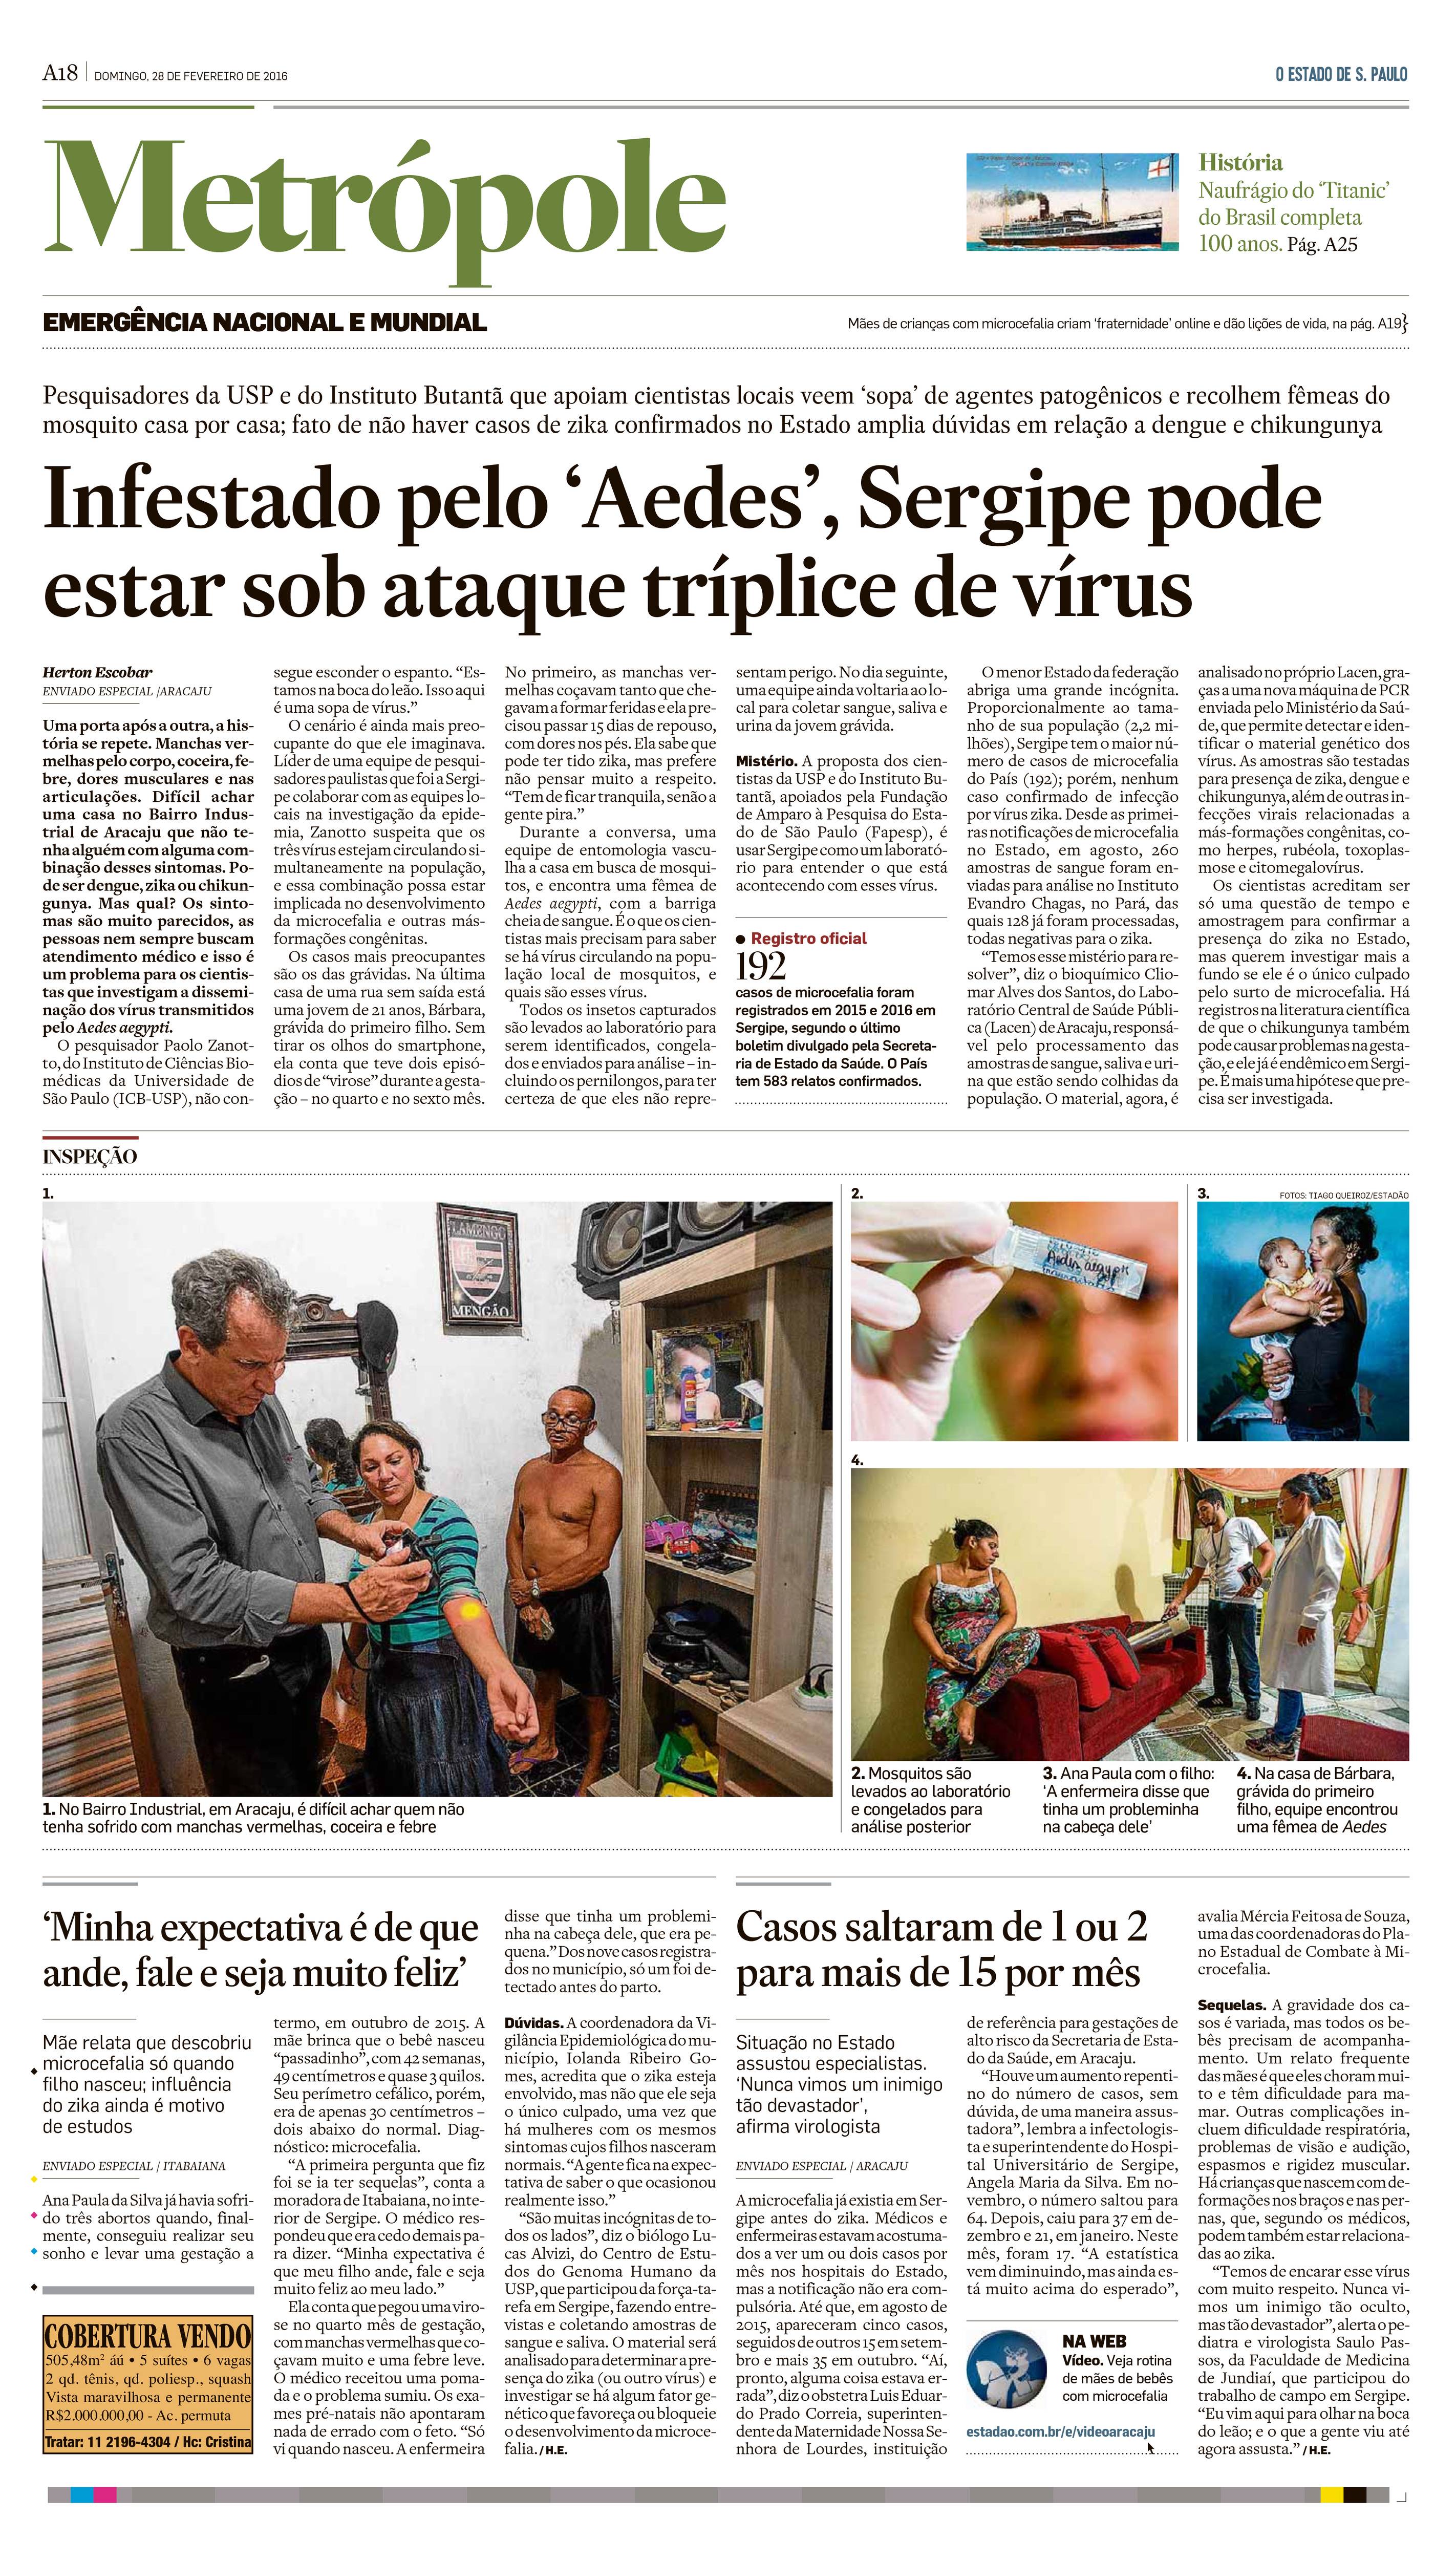 Infestado pelo Aedes Sergipe pode estar sob ataque tríplice de vírus